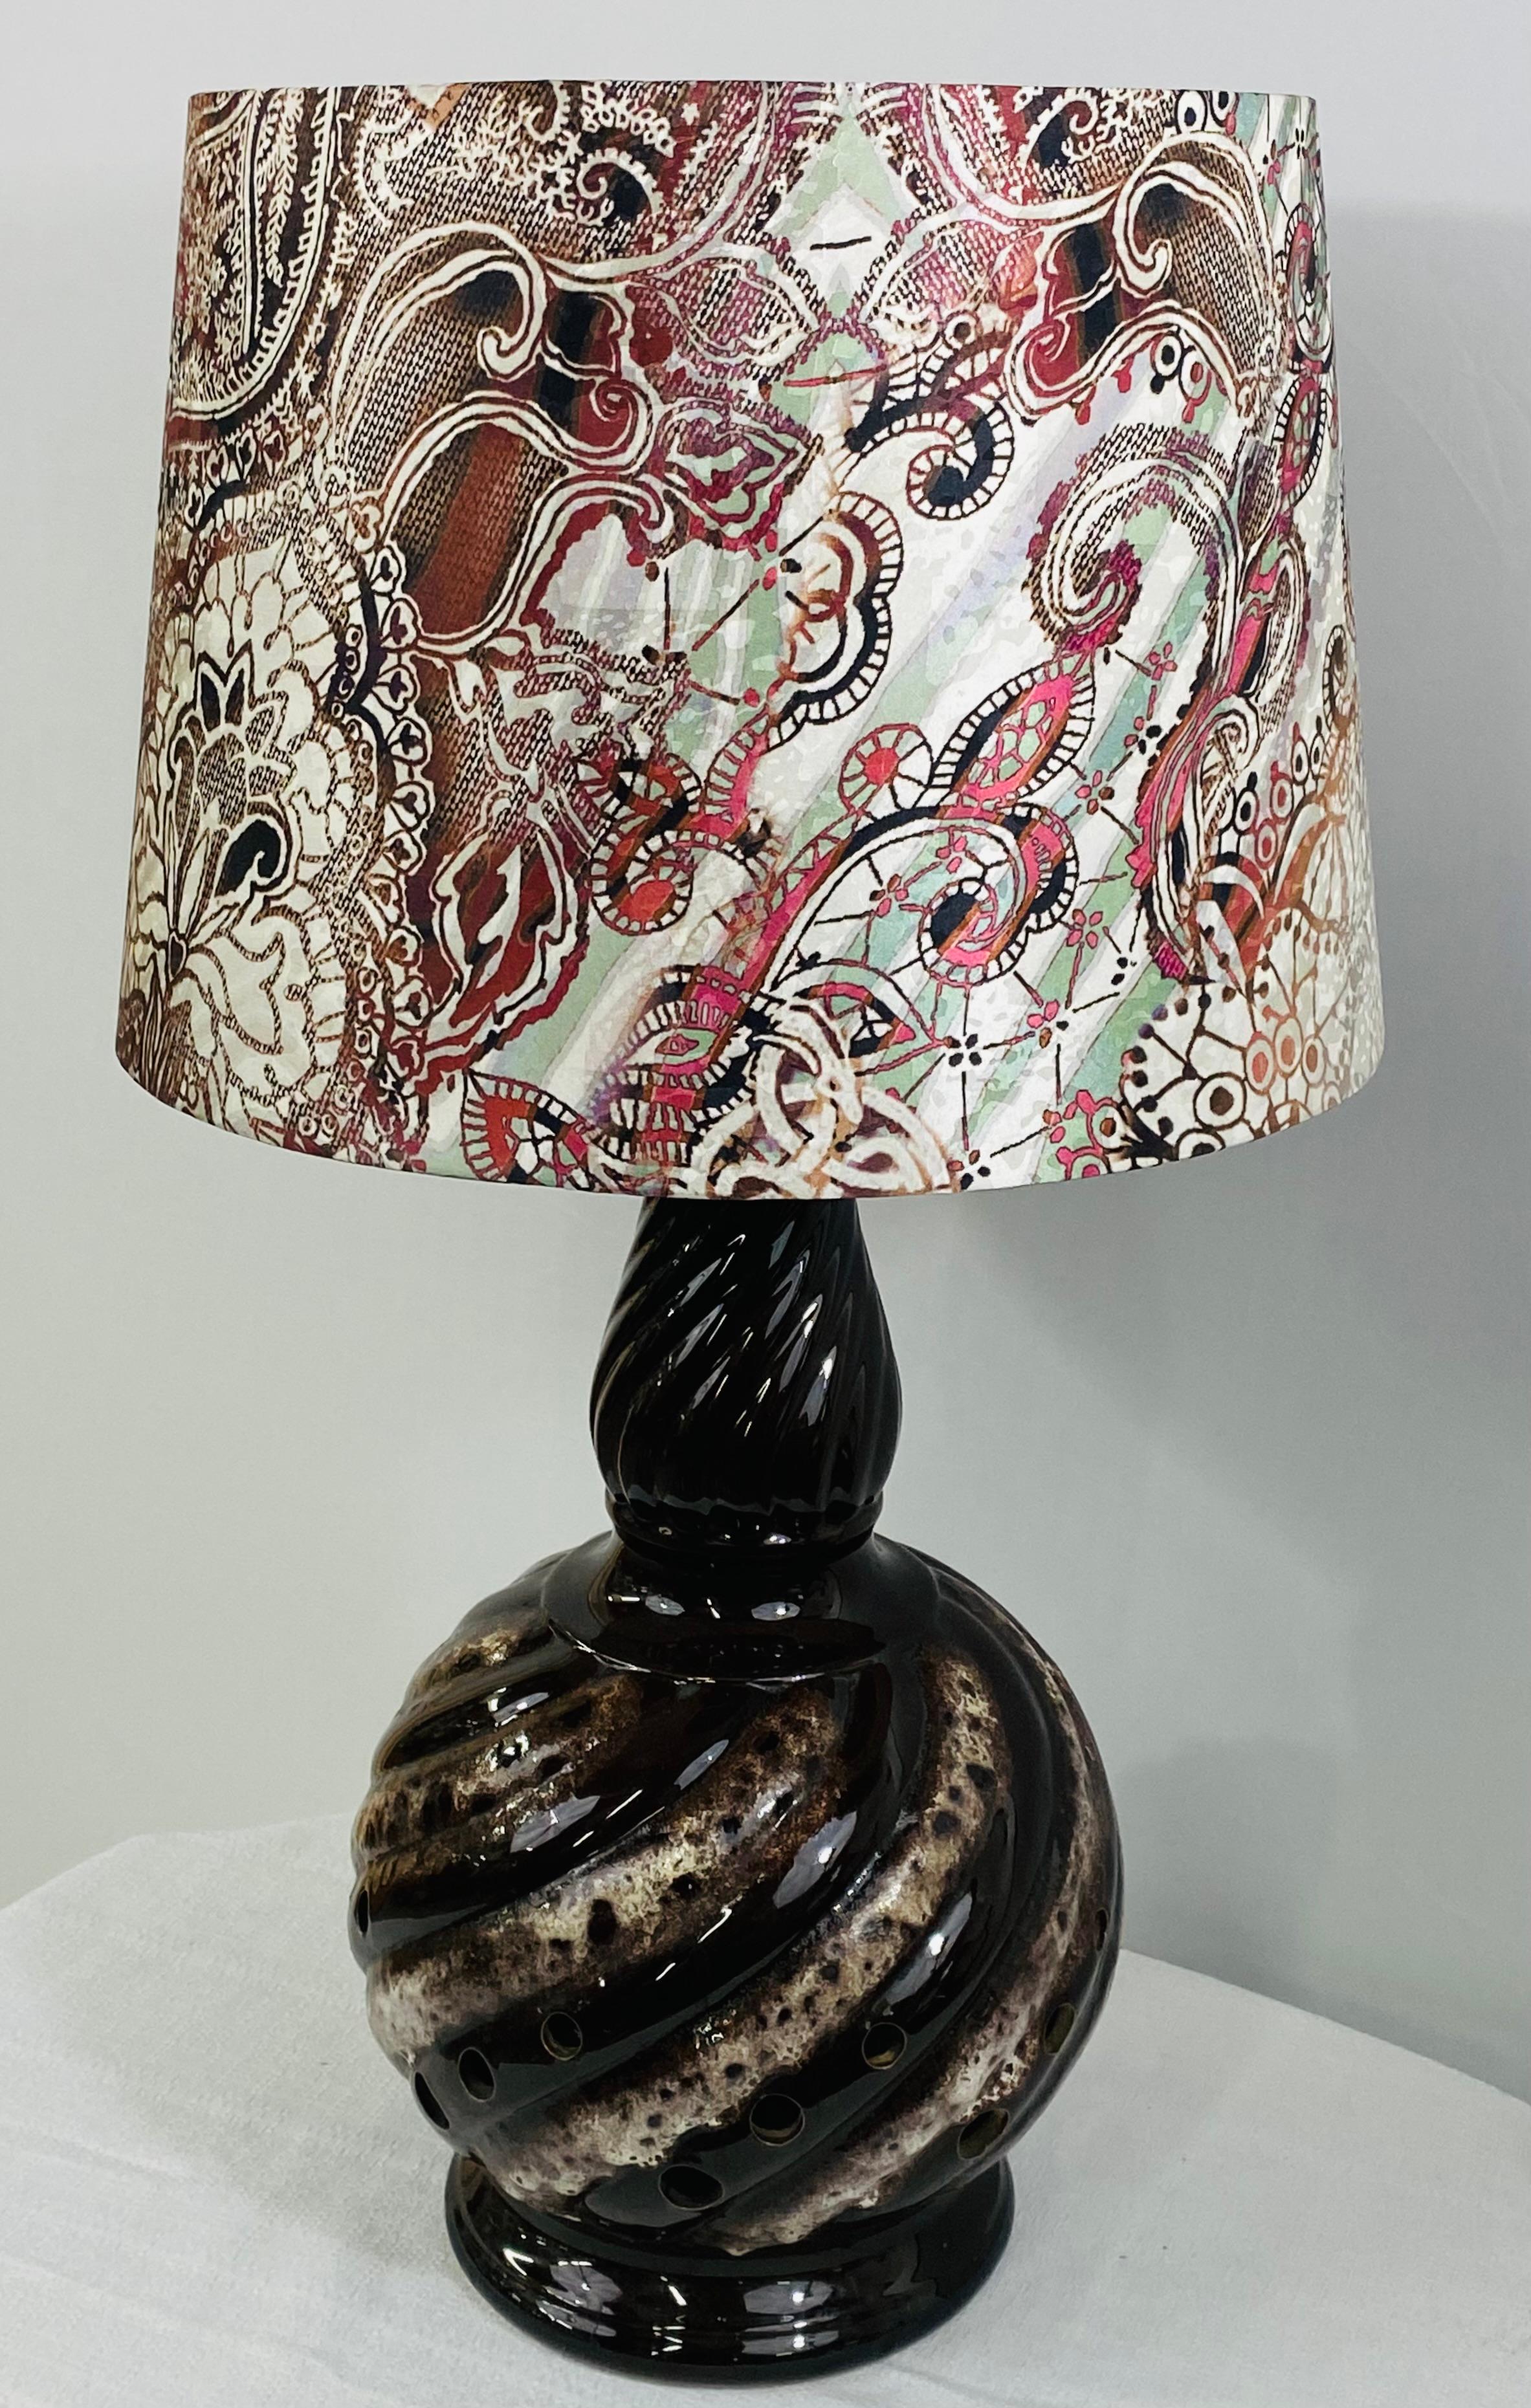 Eine stilvolle Tischlampe im Boho Chic. Die Lampe ist eine Vase oder ein Glas umgewandelt und hat zwei Lichter installiert, eine Standard-Birne als Hauptlichtquelle und ein kleines Licht im Inneren des Glases. Der Korpus der Lampe besteht aus